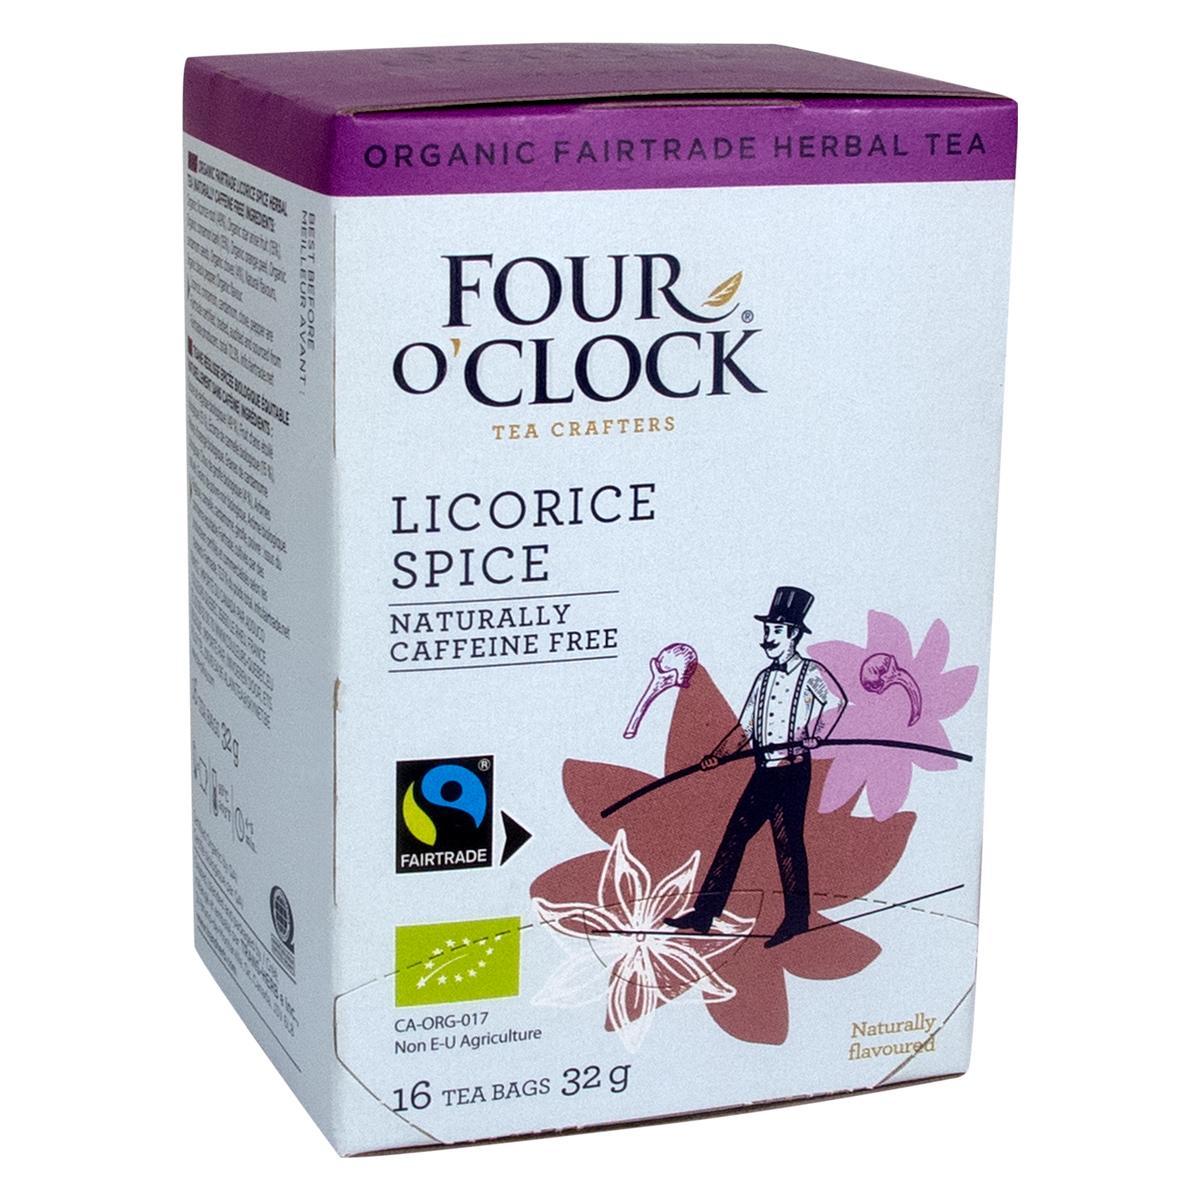 Four O’Clock's Four O'Clock LICORICE SPICE '